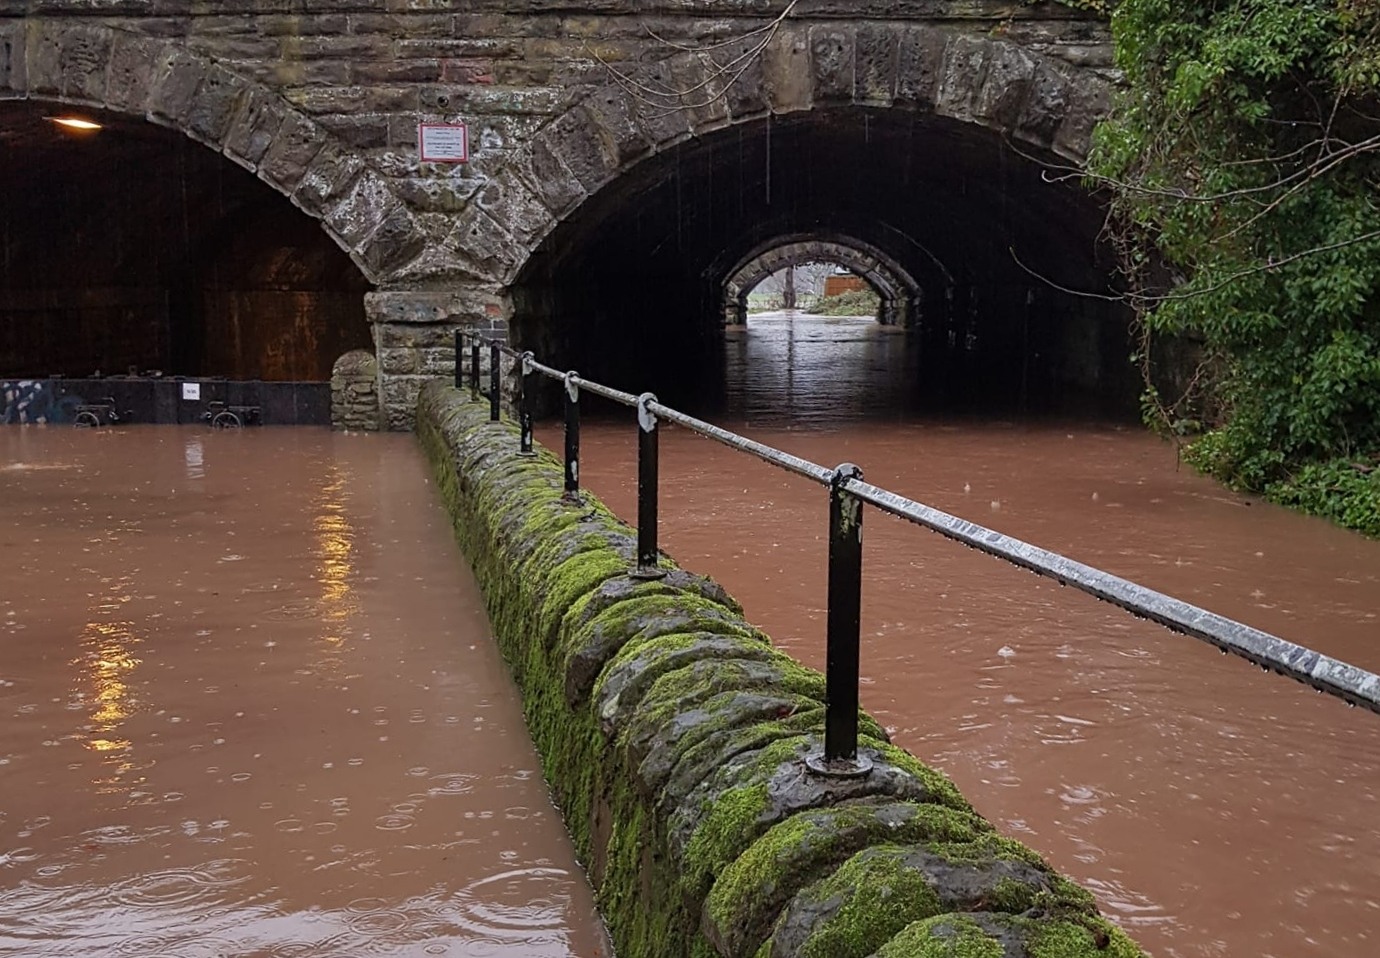 A public pathway near Craigie burn was flooded. 